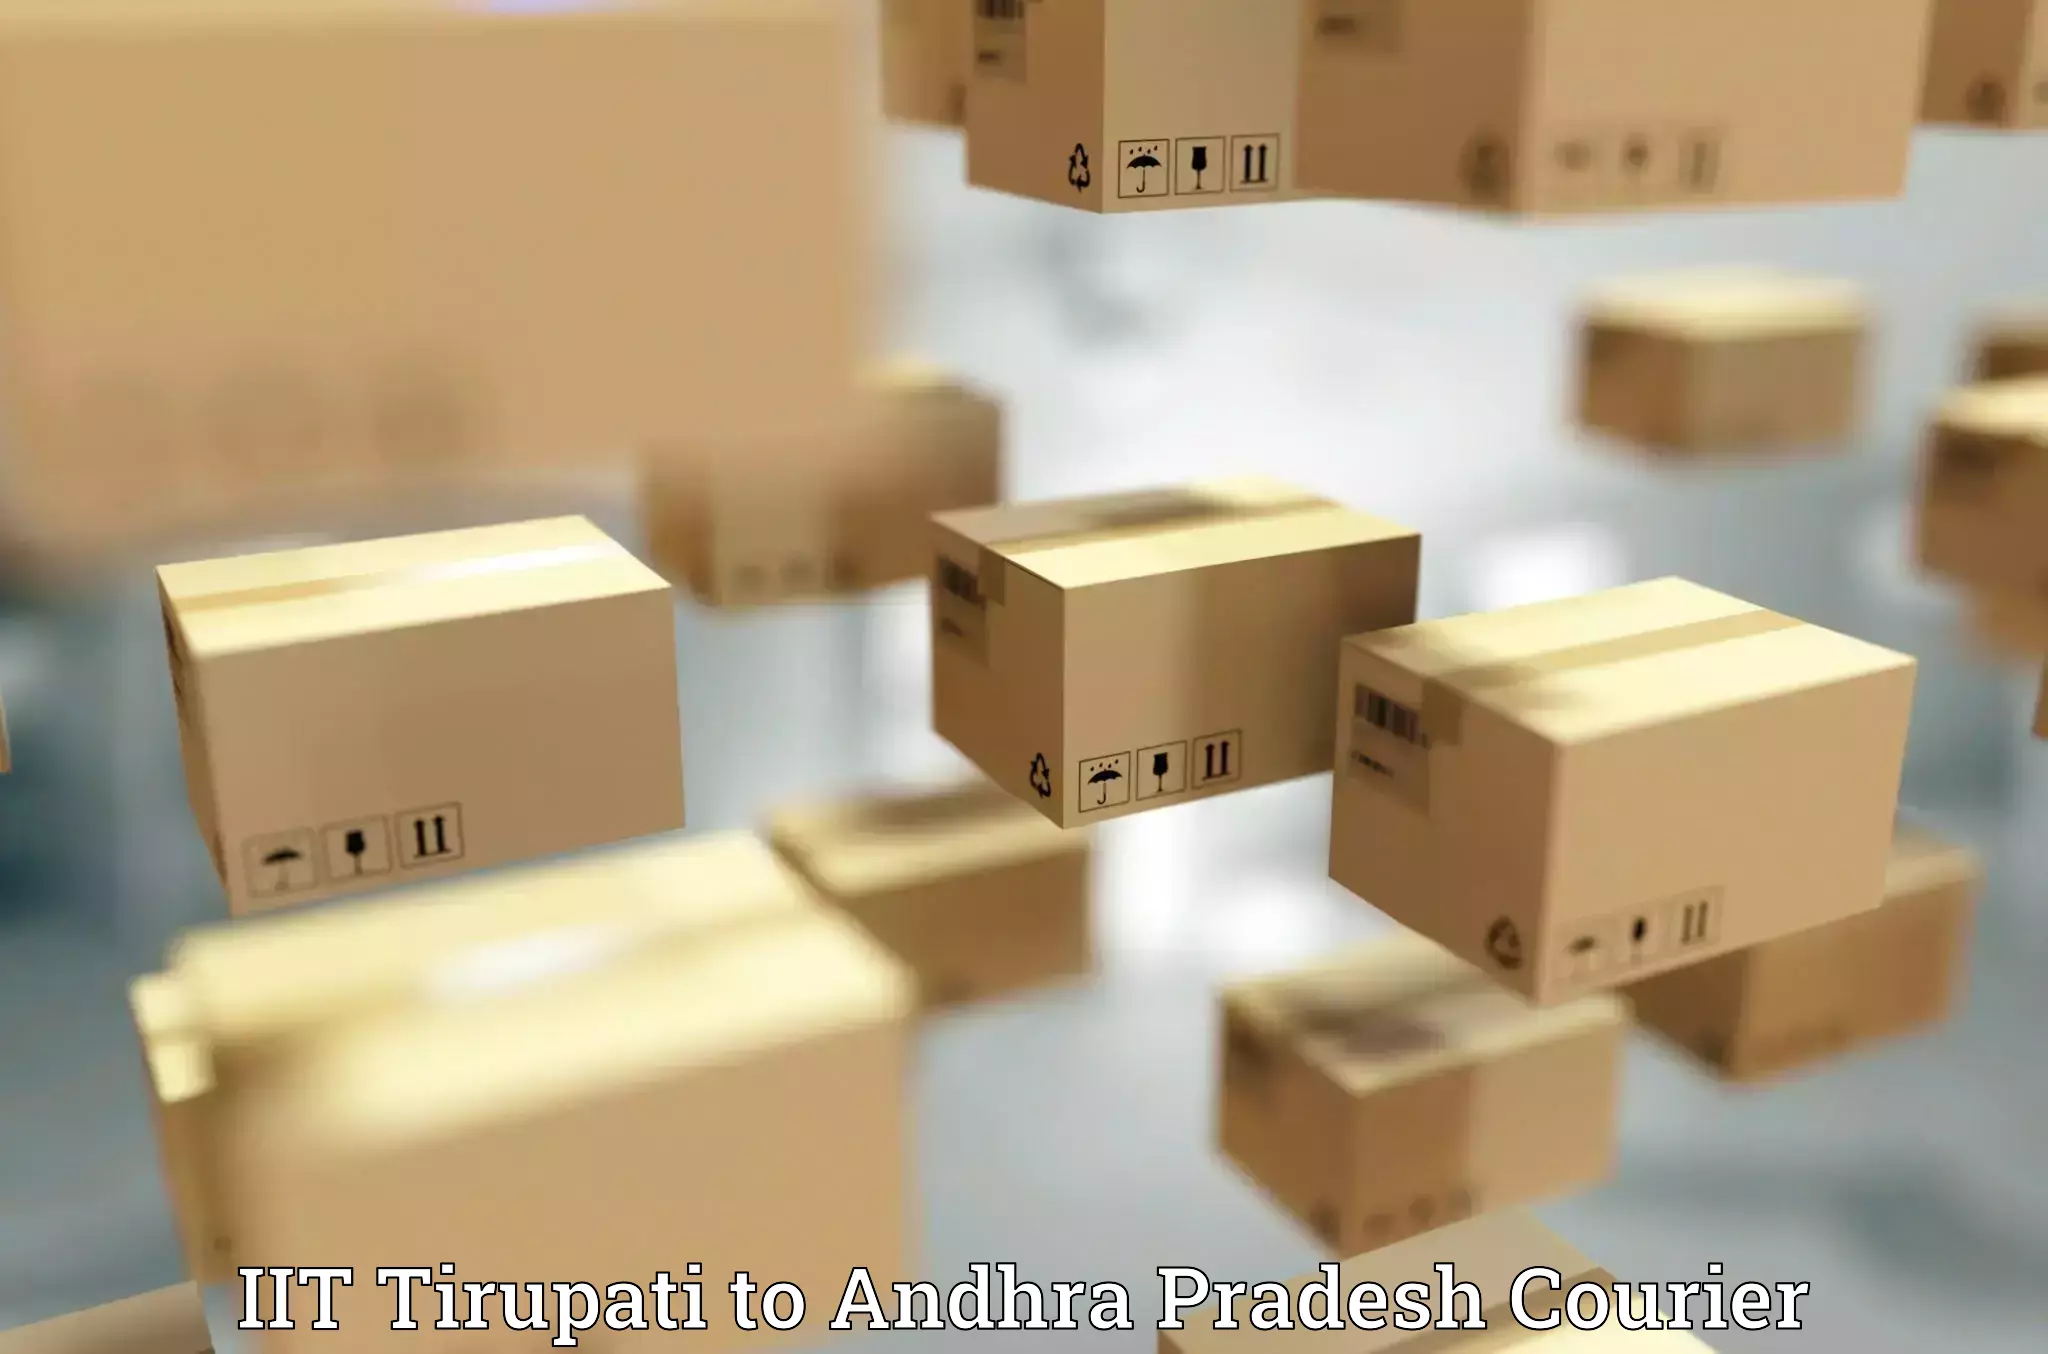 Express logistics service IIT Tirupati to Narasaraopet